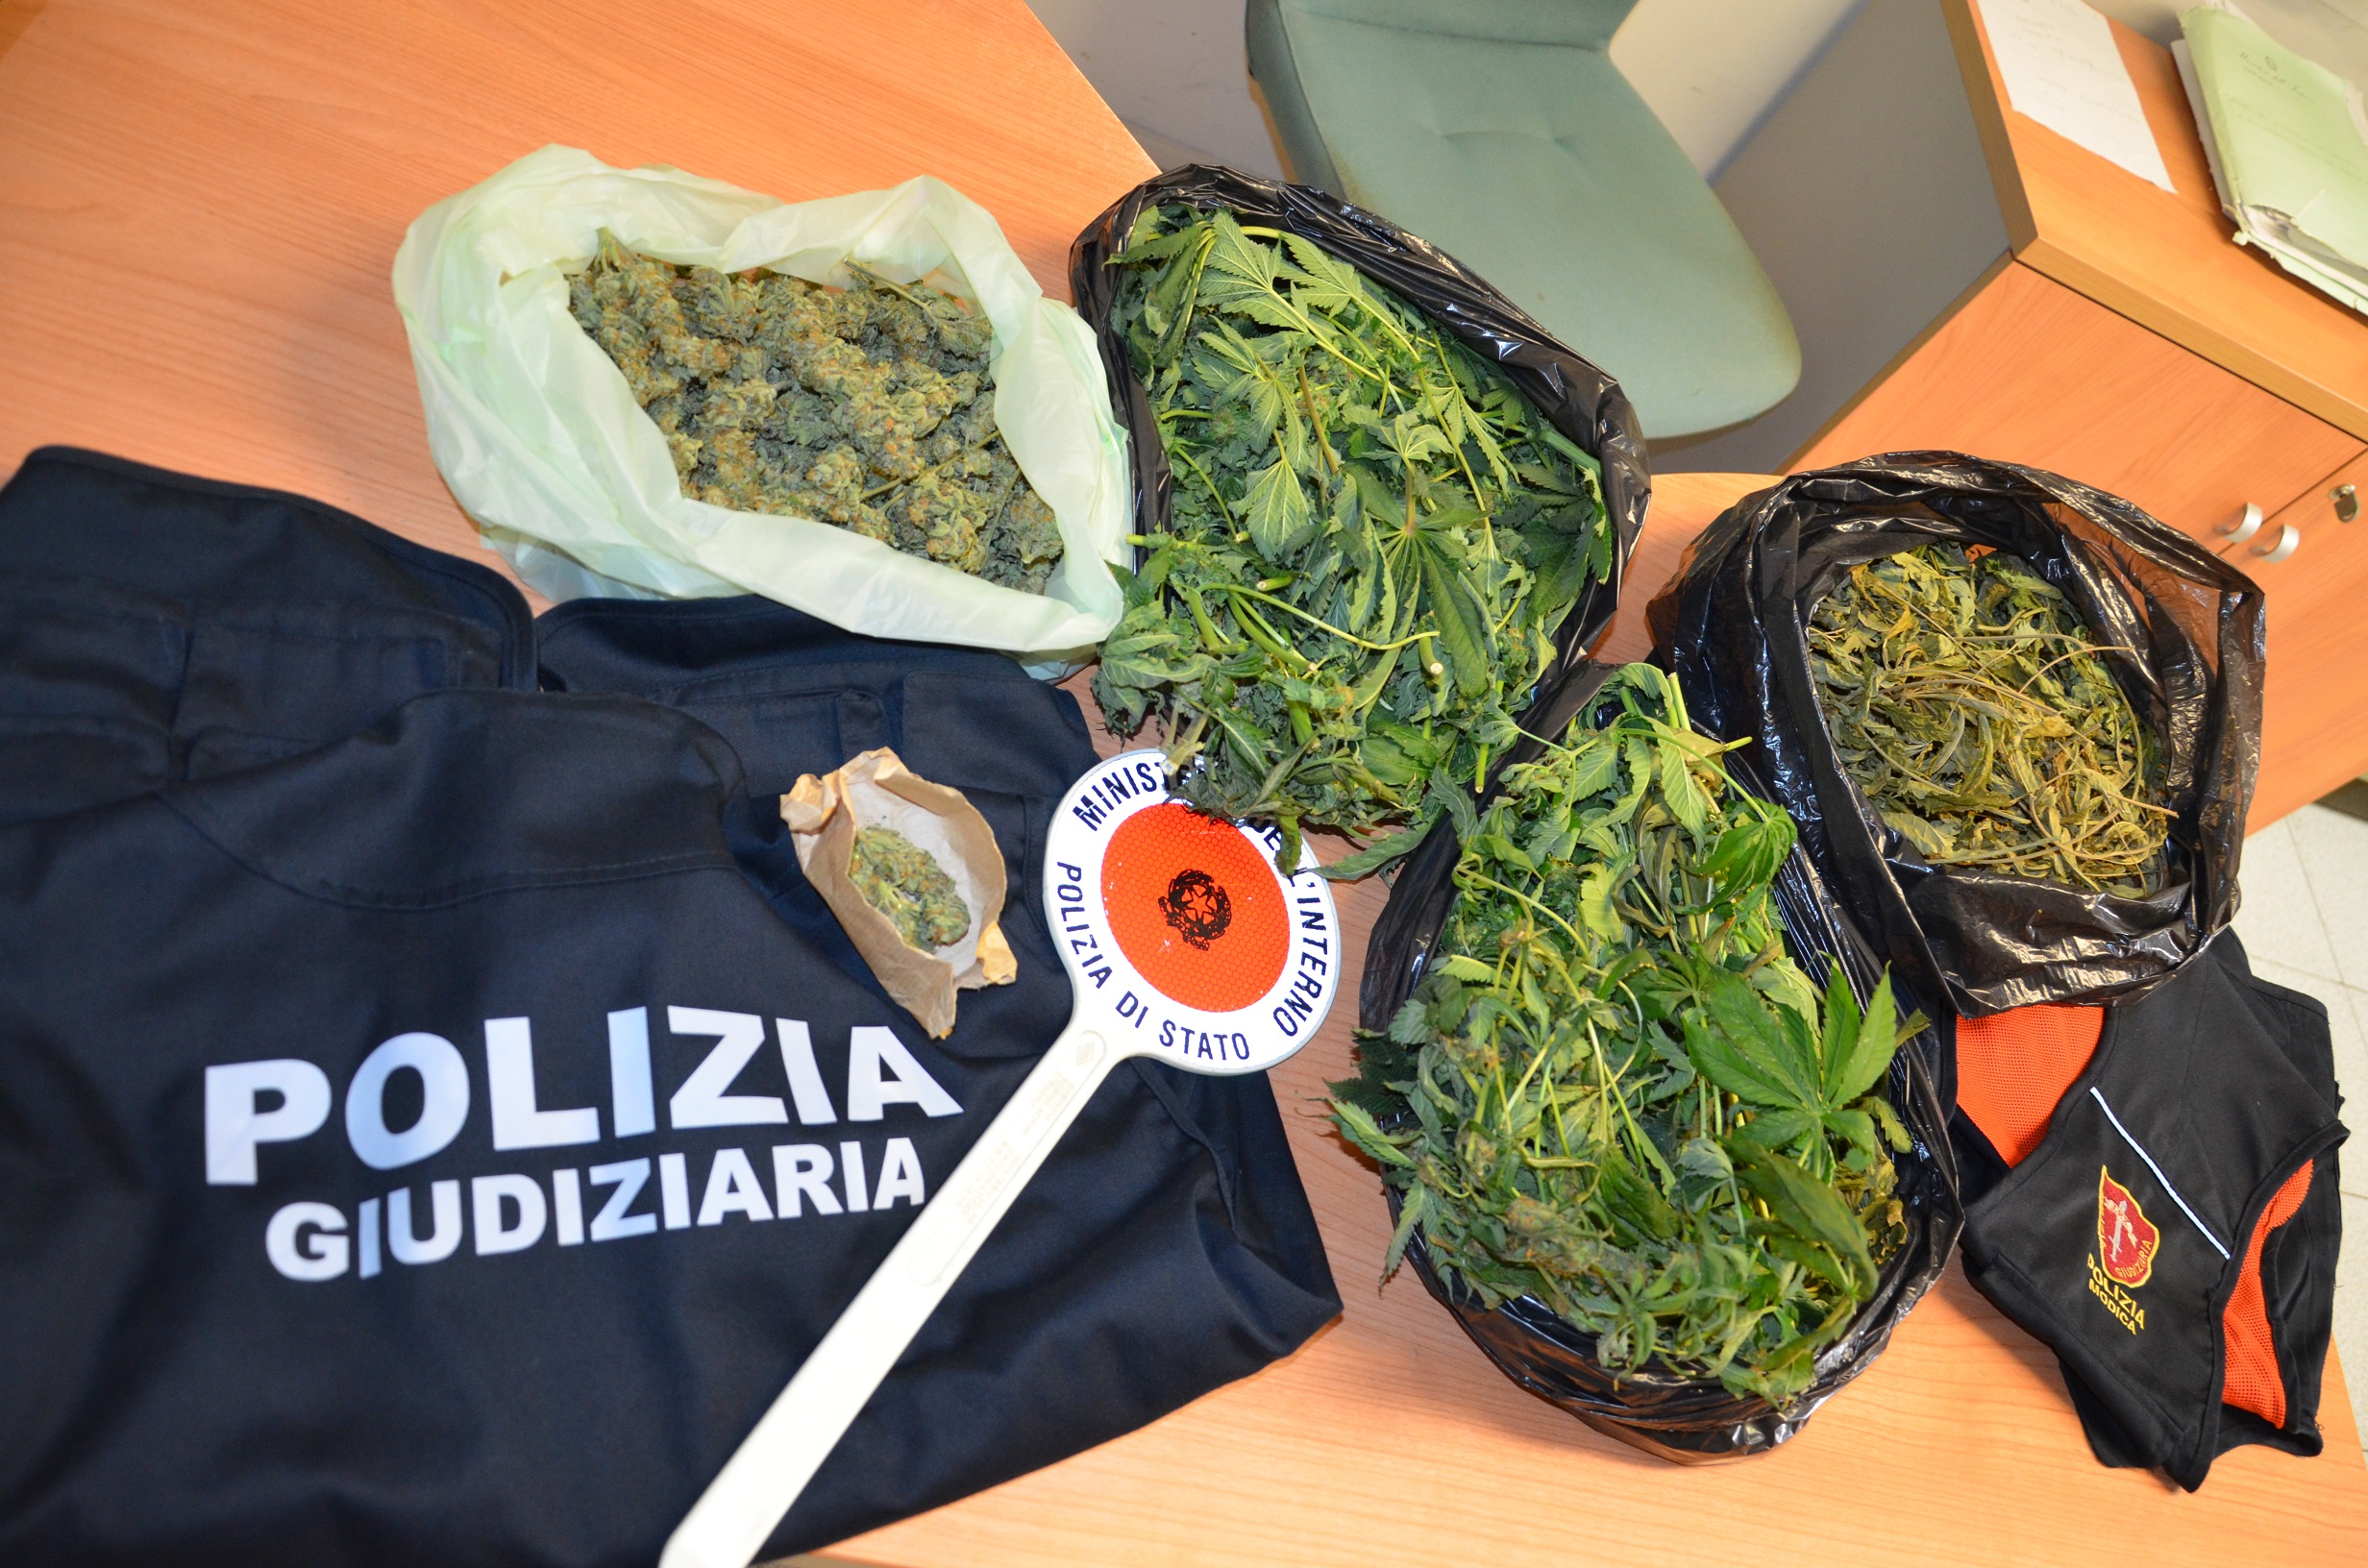  Modica – Una serra di marijuana in casa, arrestato un magazziniere